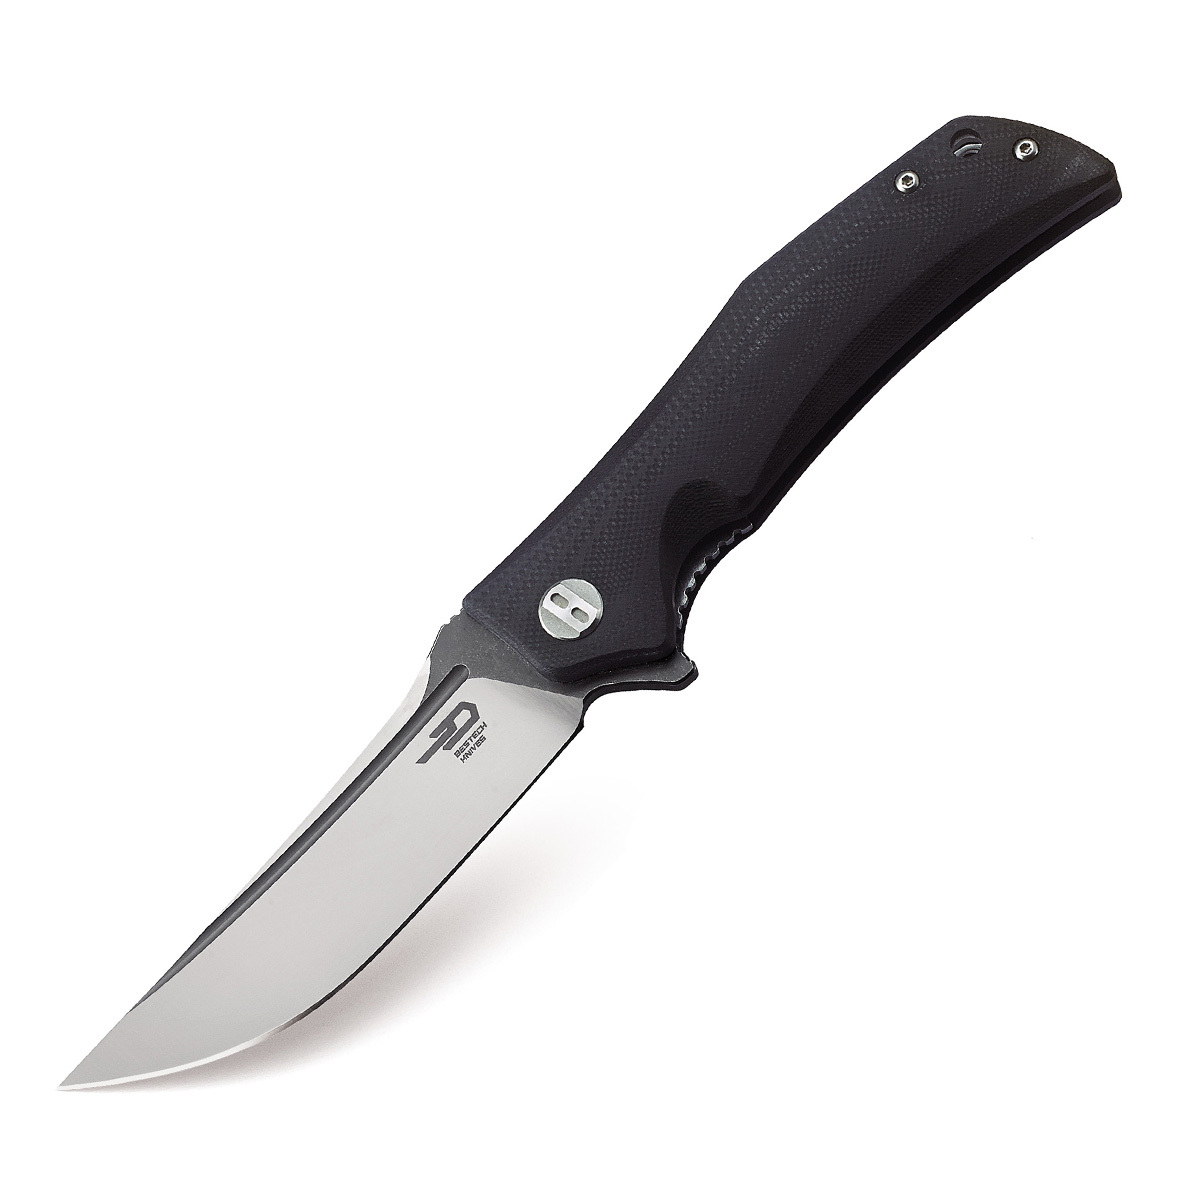 Складной нож Bestech Scimitar, сталь D2, рукоять G10 складной нож bestech swift сталь d2 micarta